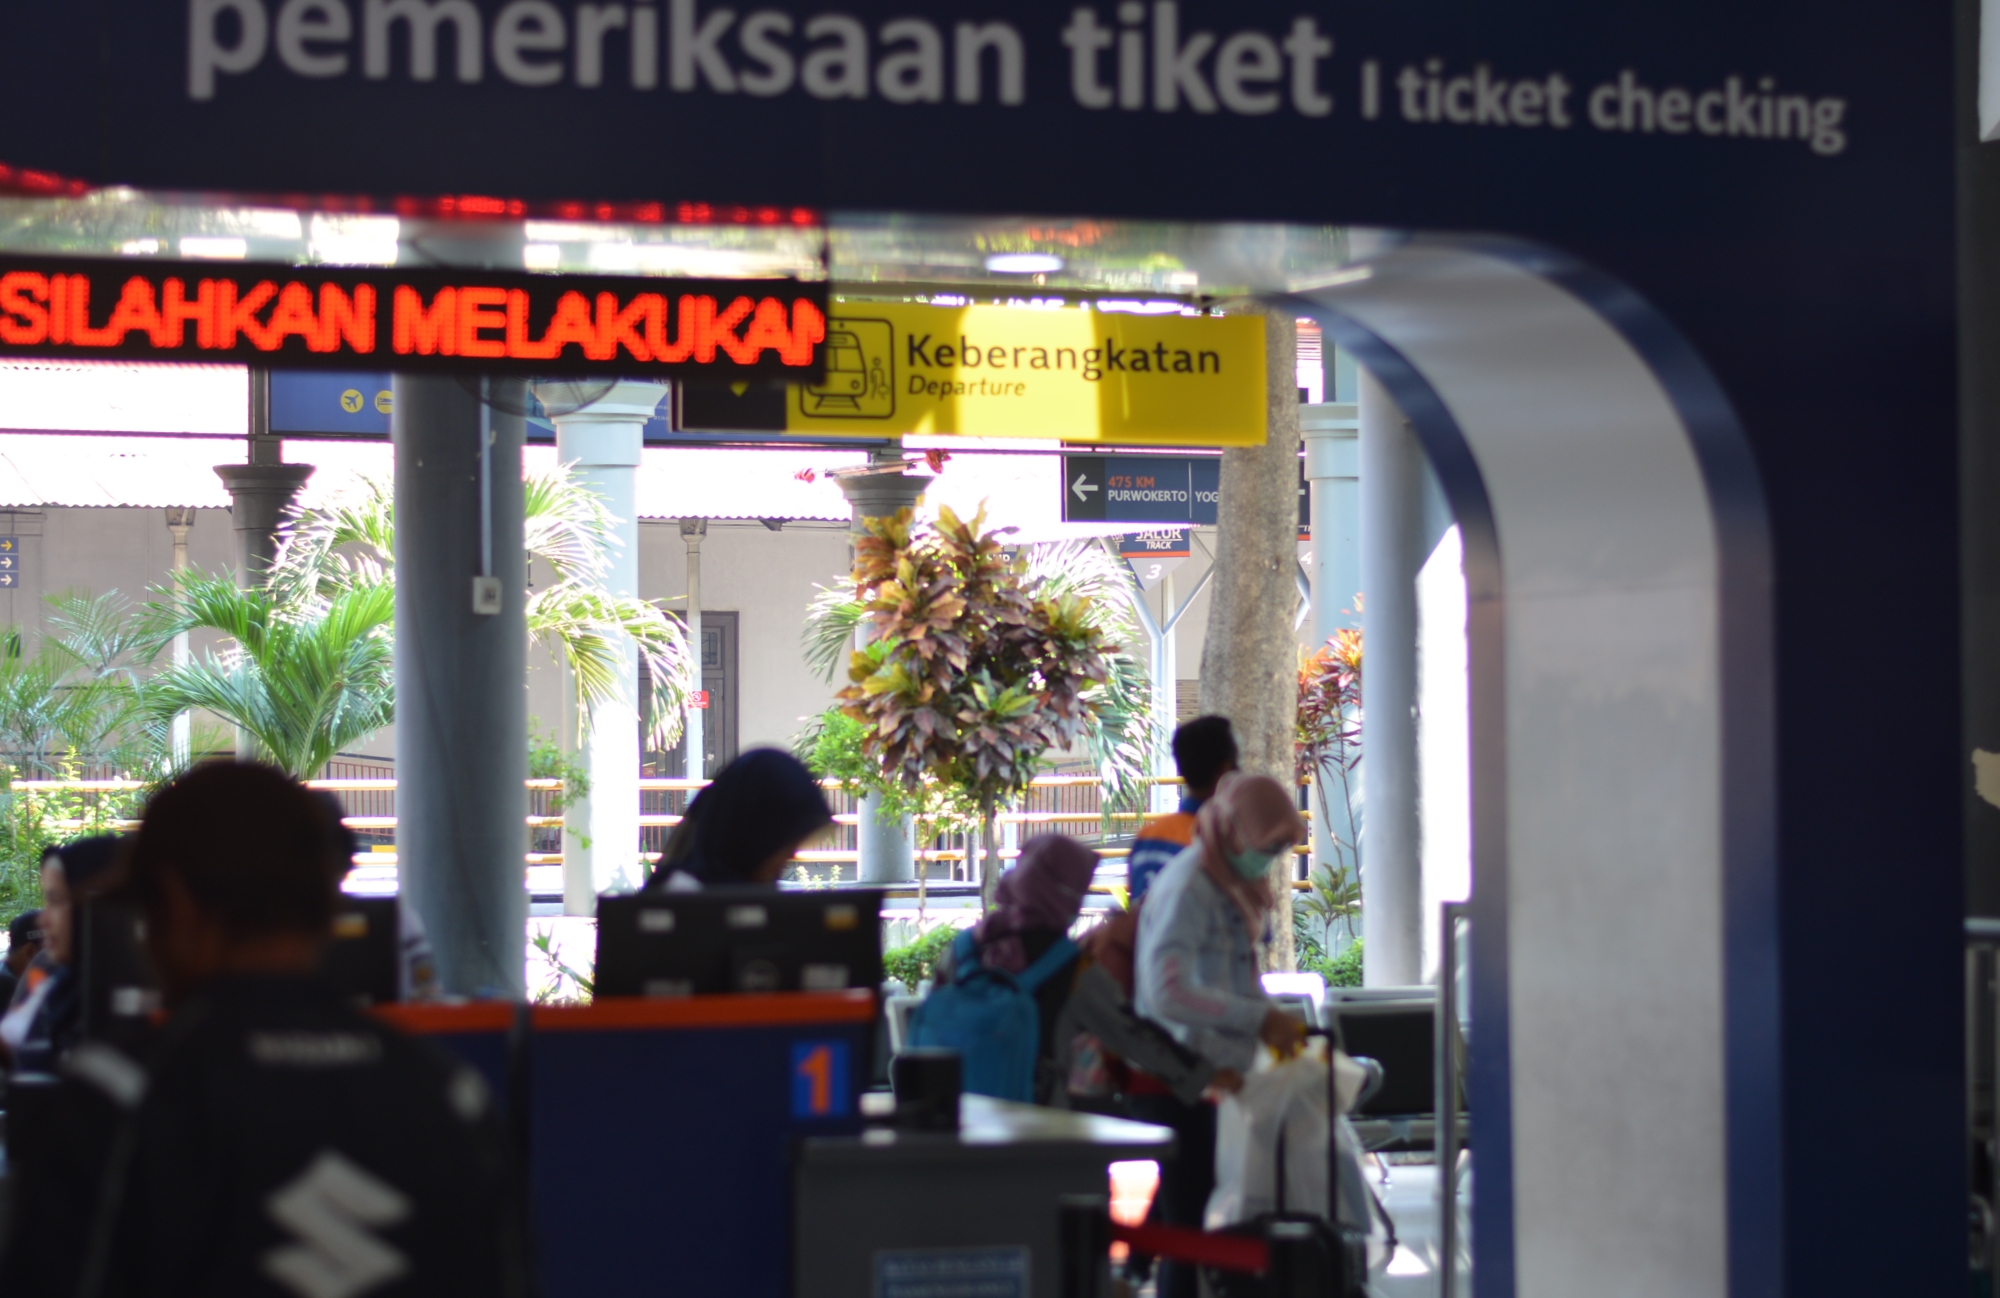 kondisi pemeriksaan tiket di Stasiun Gubeng Surabaya, Senin 11 Juni 2018. (Foto: Haris/ngopibareng)